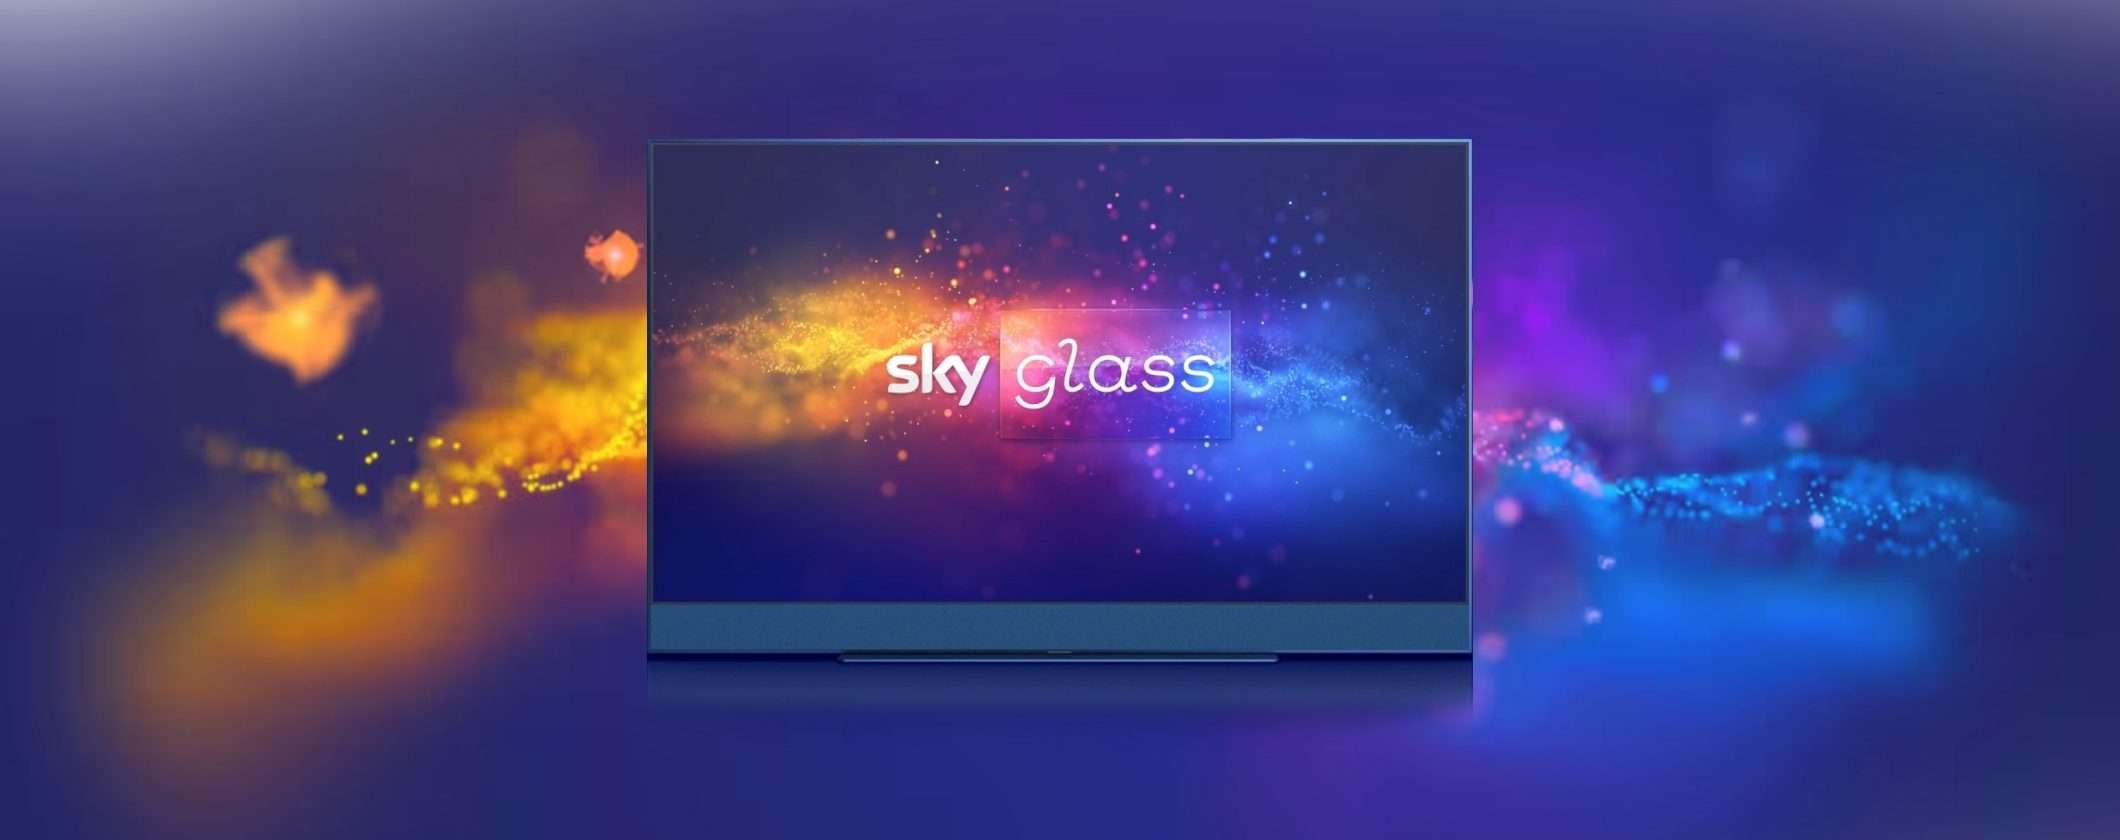 Sky Glass TV 43